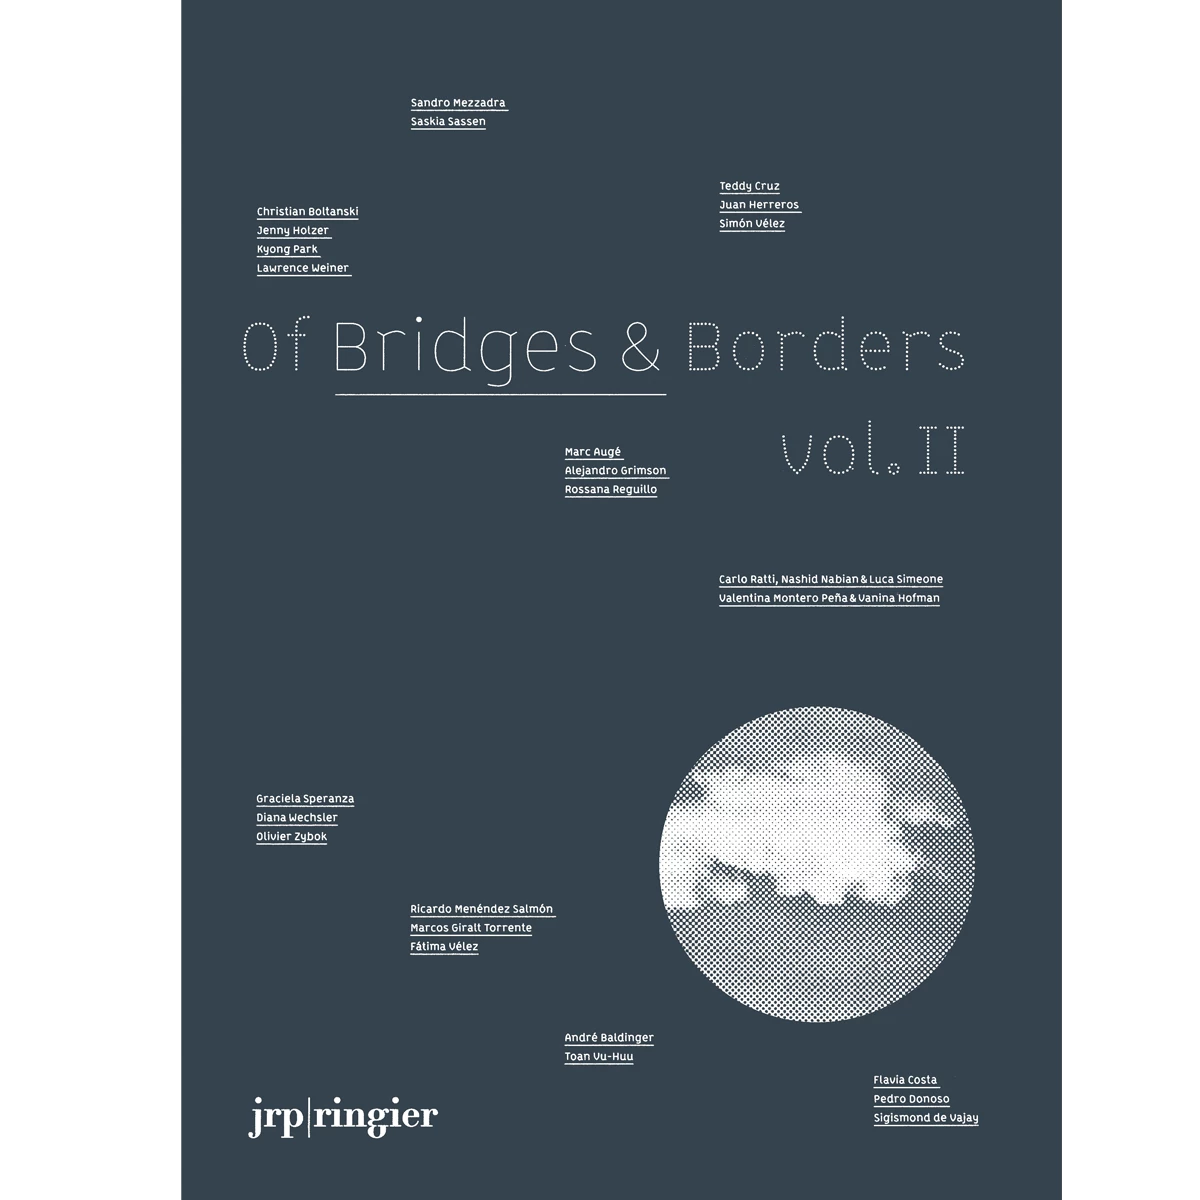 Of Bridges & Borders, vol. II